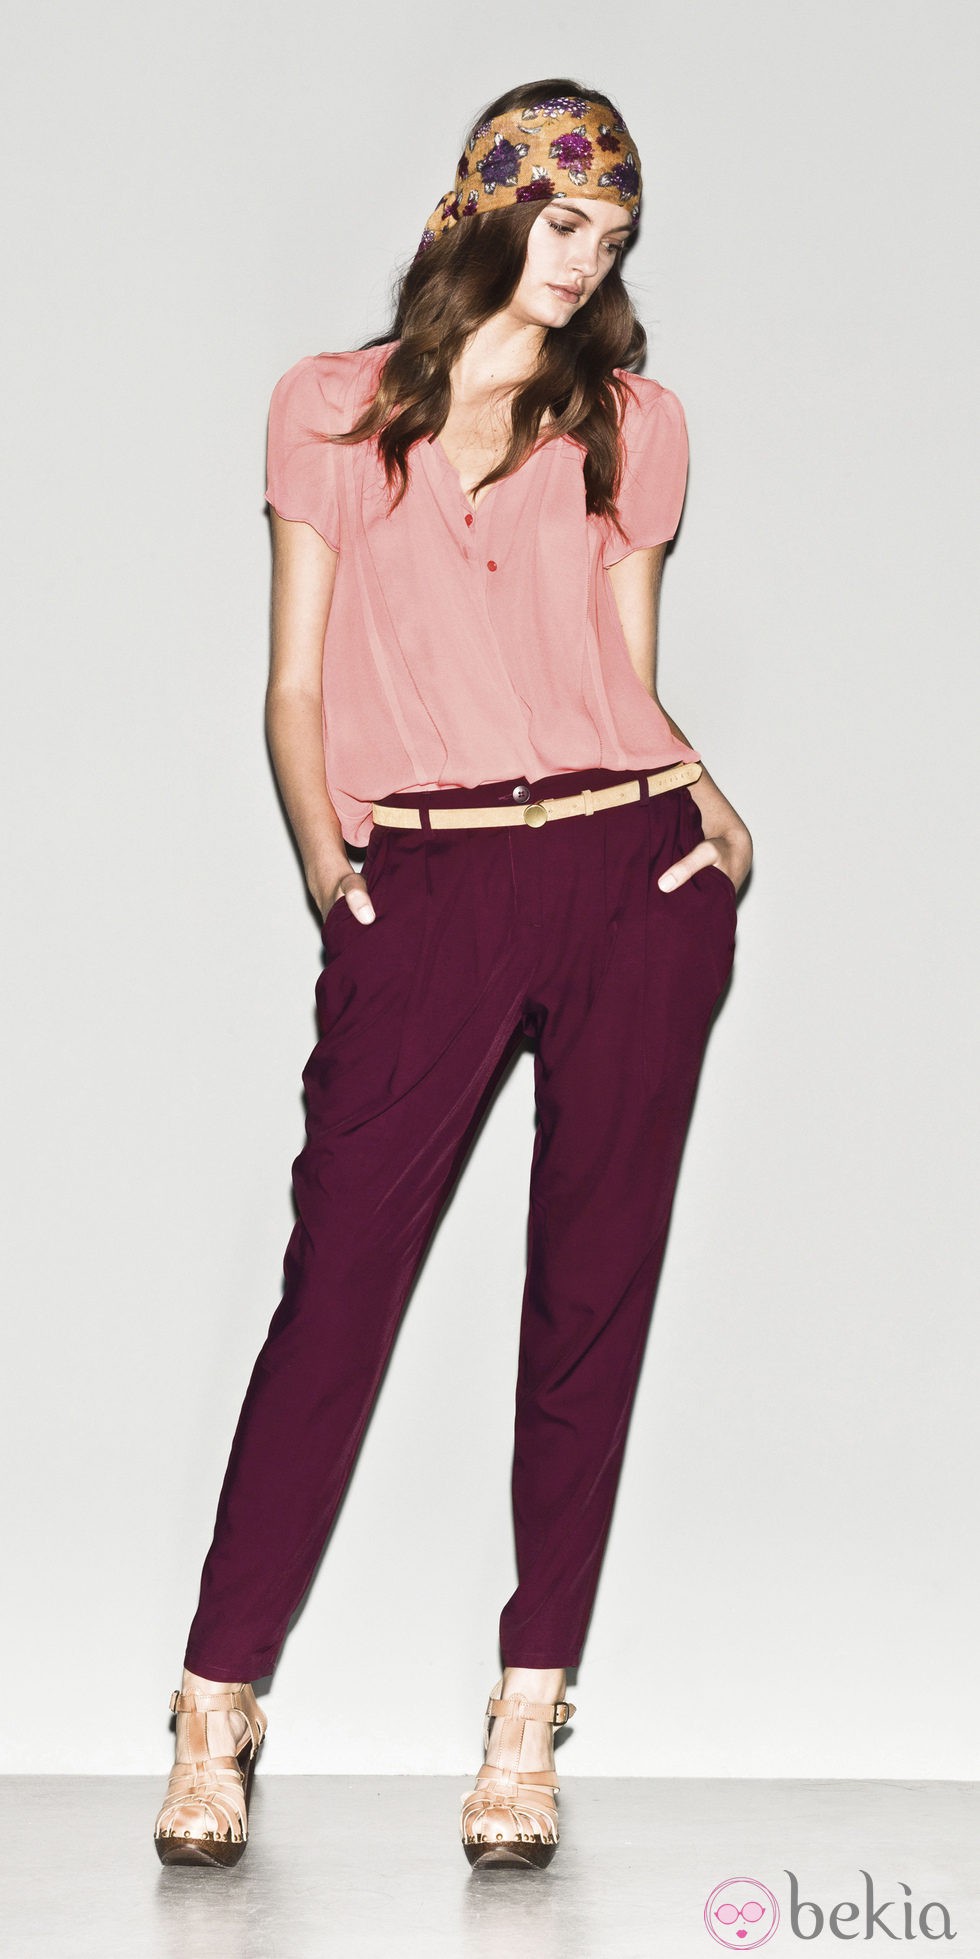 Camisa rosa y pantalón berenjena de la colección primavera/verano 2013 de Sisley